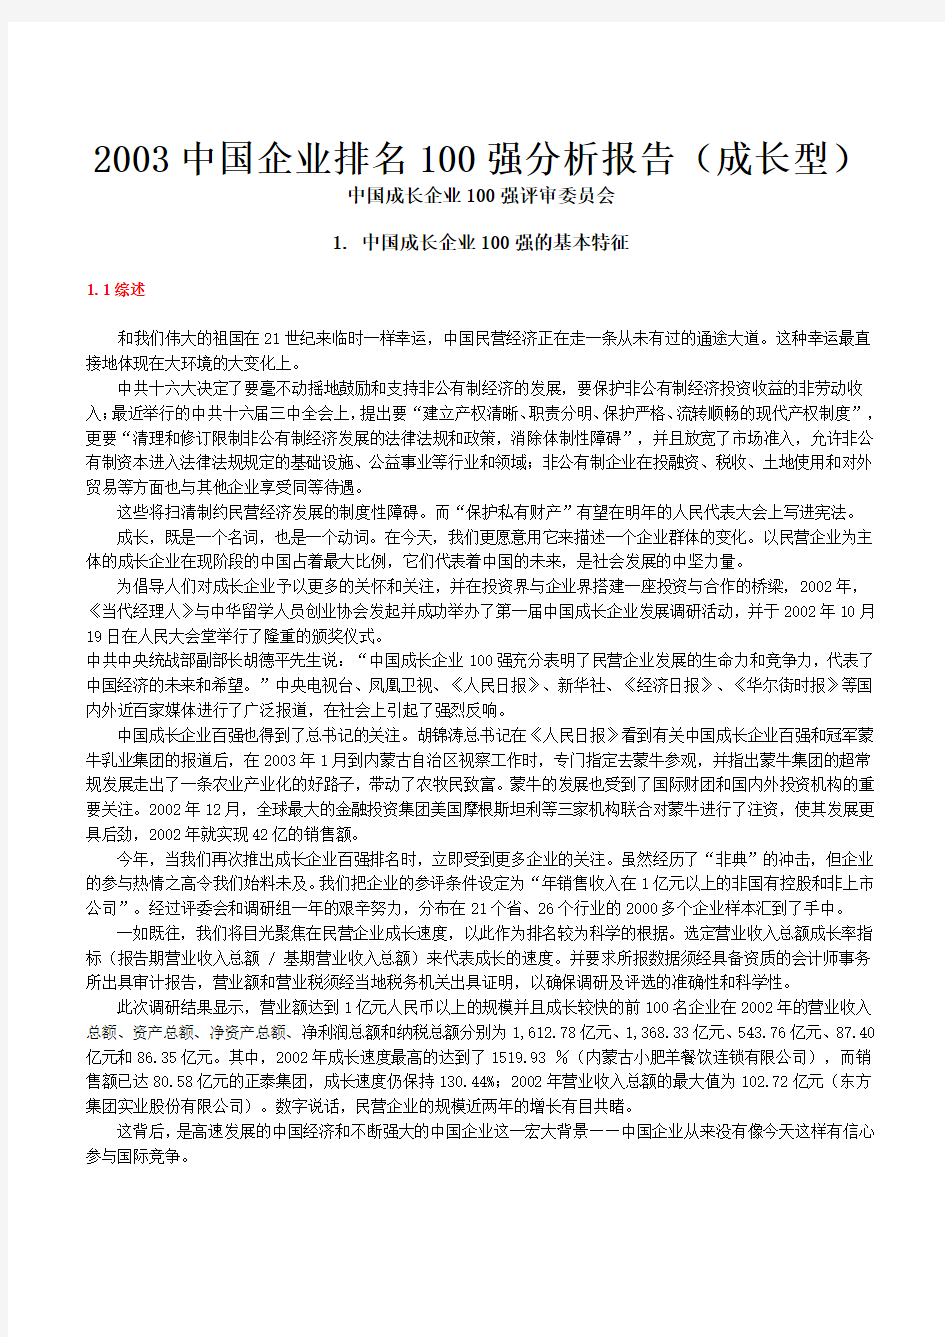 【年度报告】中国企业排名100强分析报告(DOC 21页)